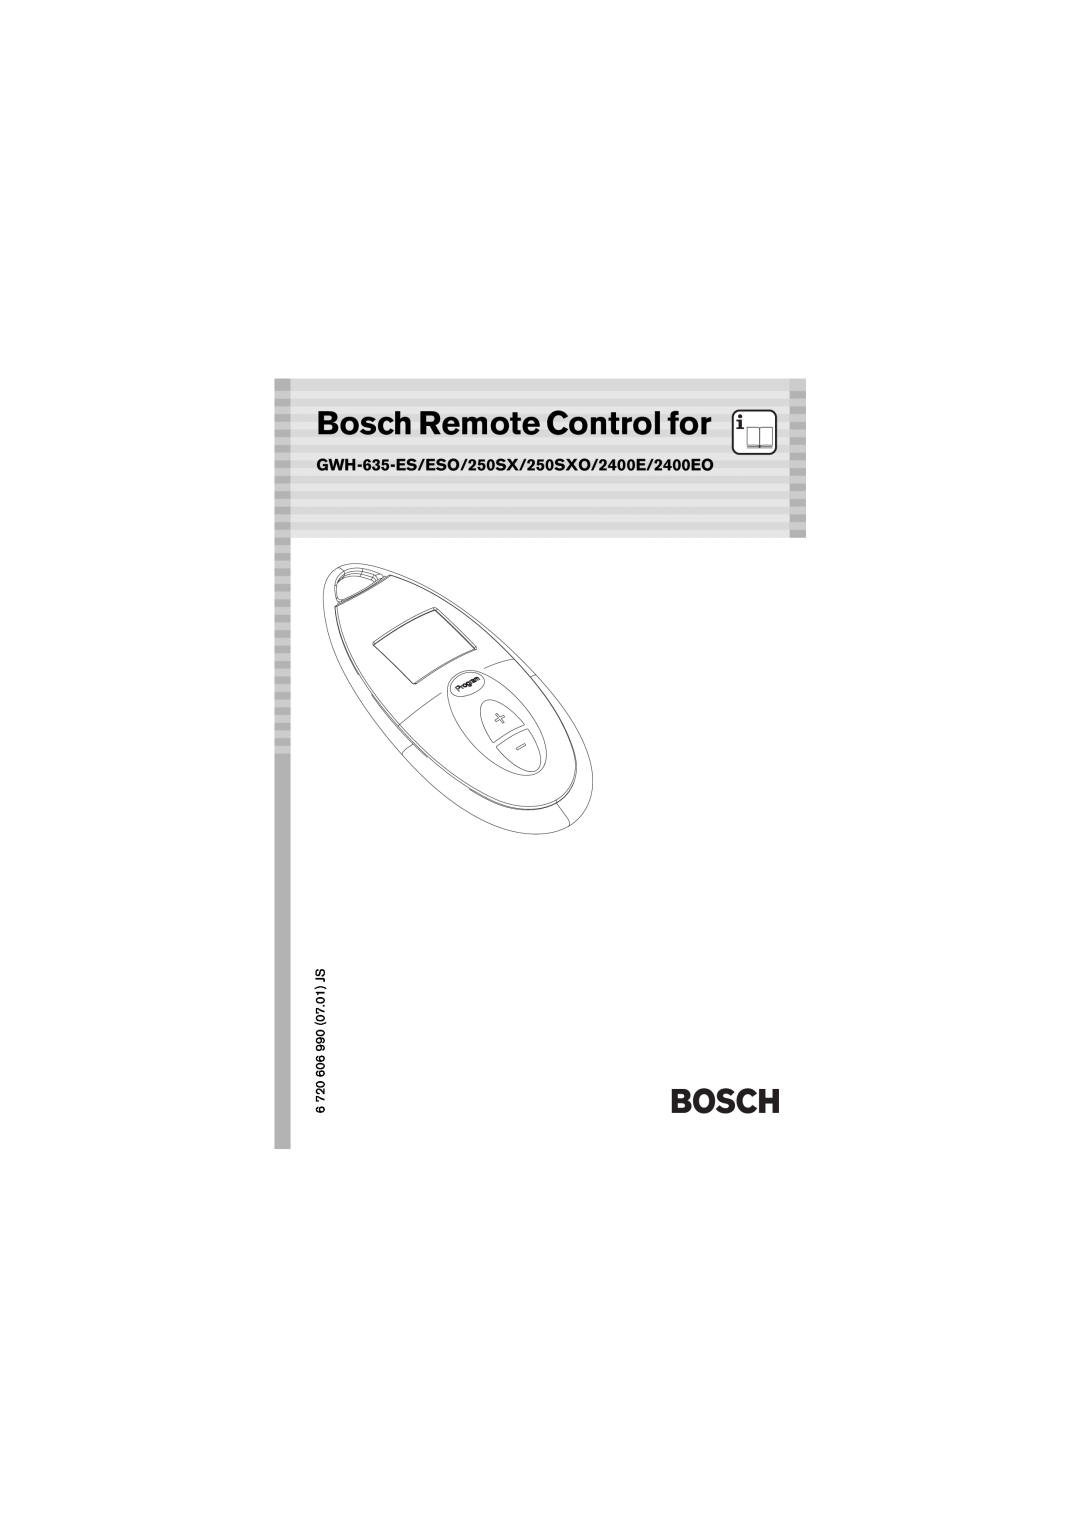 Bosch Appliances manual GWH-635-ES/ESO/250SX/250SXO/2400E/2400EO, Bosch Remote Control for 